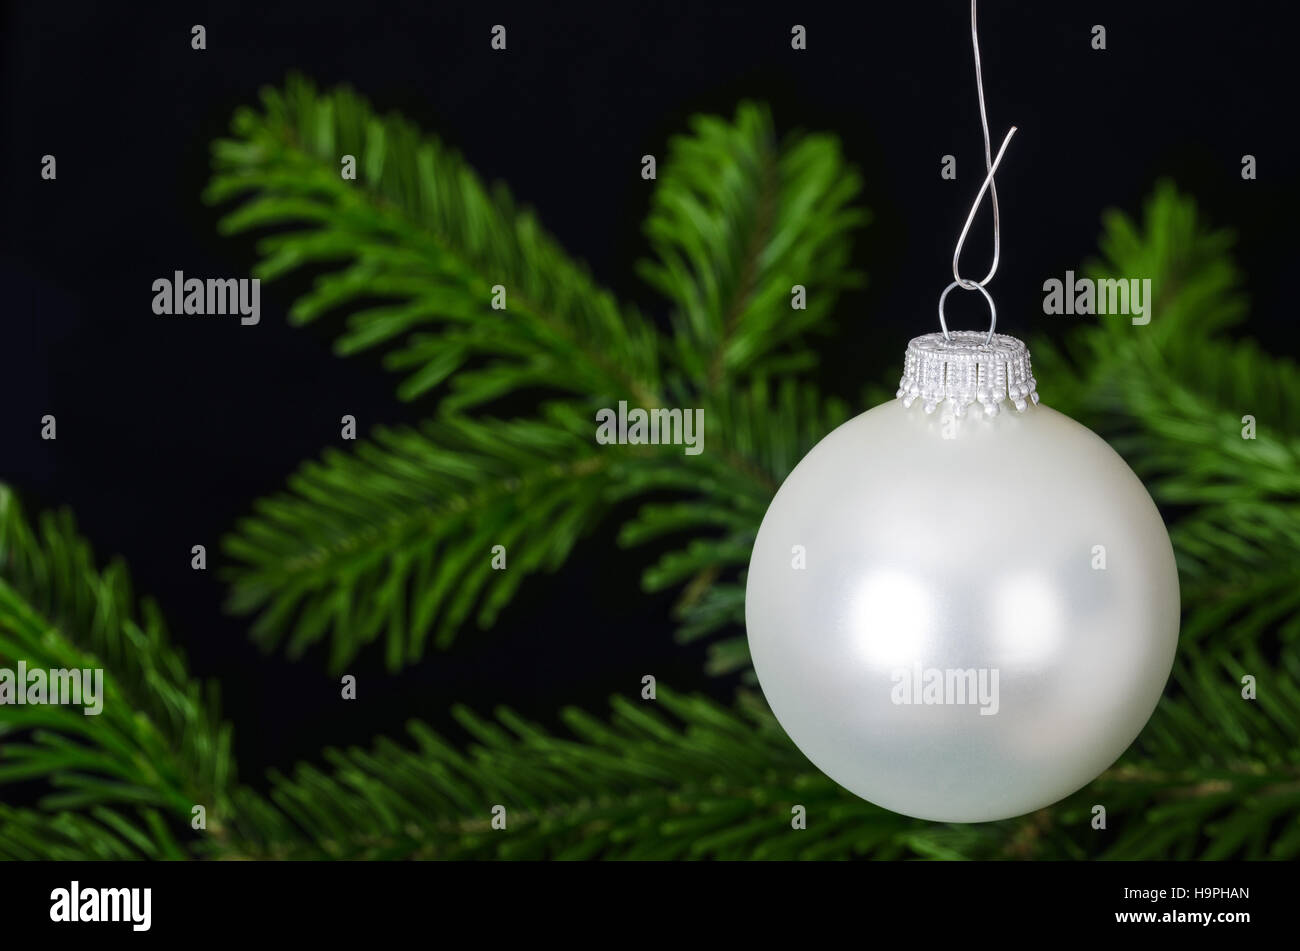 Silber weiße Christbaumkugel, eine sphärische Christbaumkugel, hängen in der Regel am Weihnachtsbaum.  Weihnachtskugel, ein Weihnachten Baumschmuck. Stockfoto